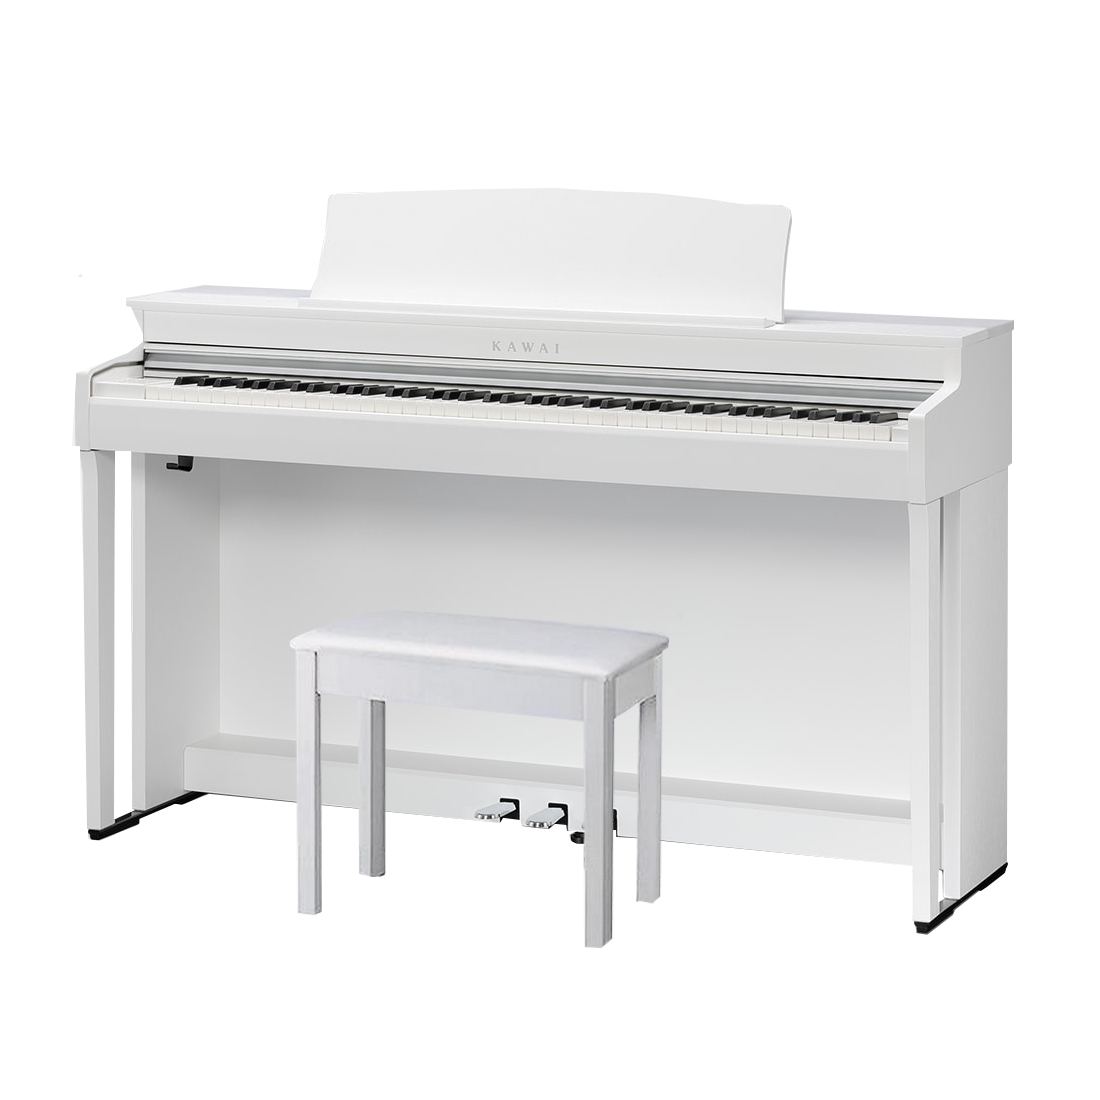 KAWAI CN301 W - цифровое пианино, банкетка, механика Responsive Hammer III, 88 клавиш, цвет белый купить в prostore.me